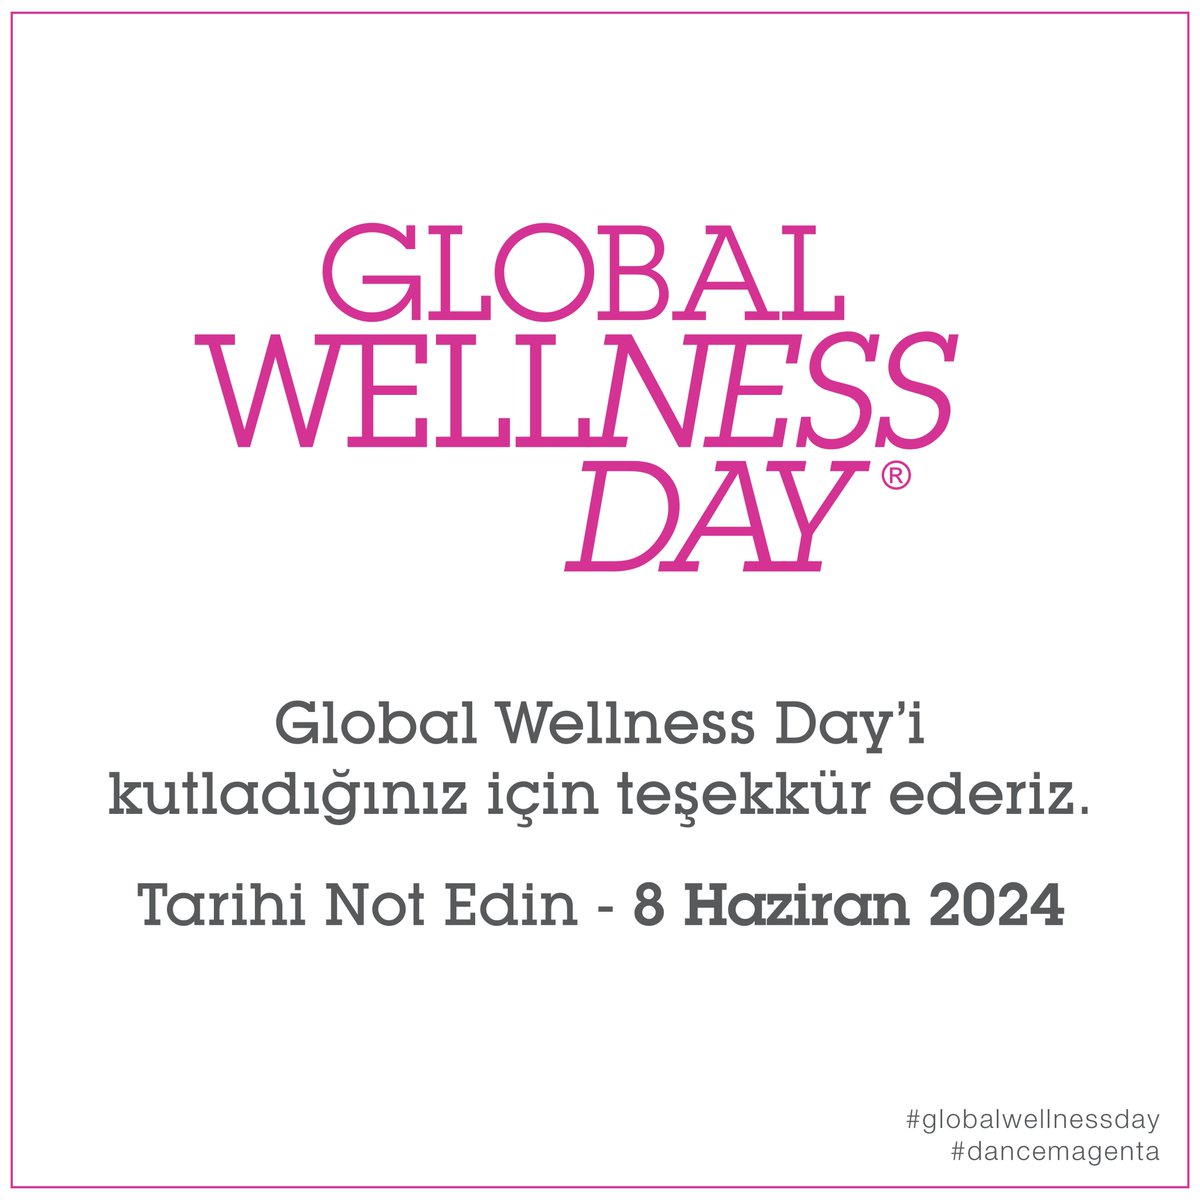 Global Wellness Day'i kutladığınız için teşekkür ederiz. Bir sonraki sene tekrar iyi yaşamı tüm dünya ile kutlamak dileğiyle… 🎉💗

Tarihi not edin - 8 Haziran 2024, Cumartesi. 🍏

#globalwellnessday #globalwellnessdayturkey #dancemagenta #gwd2024